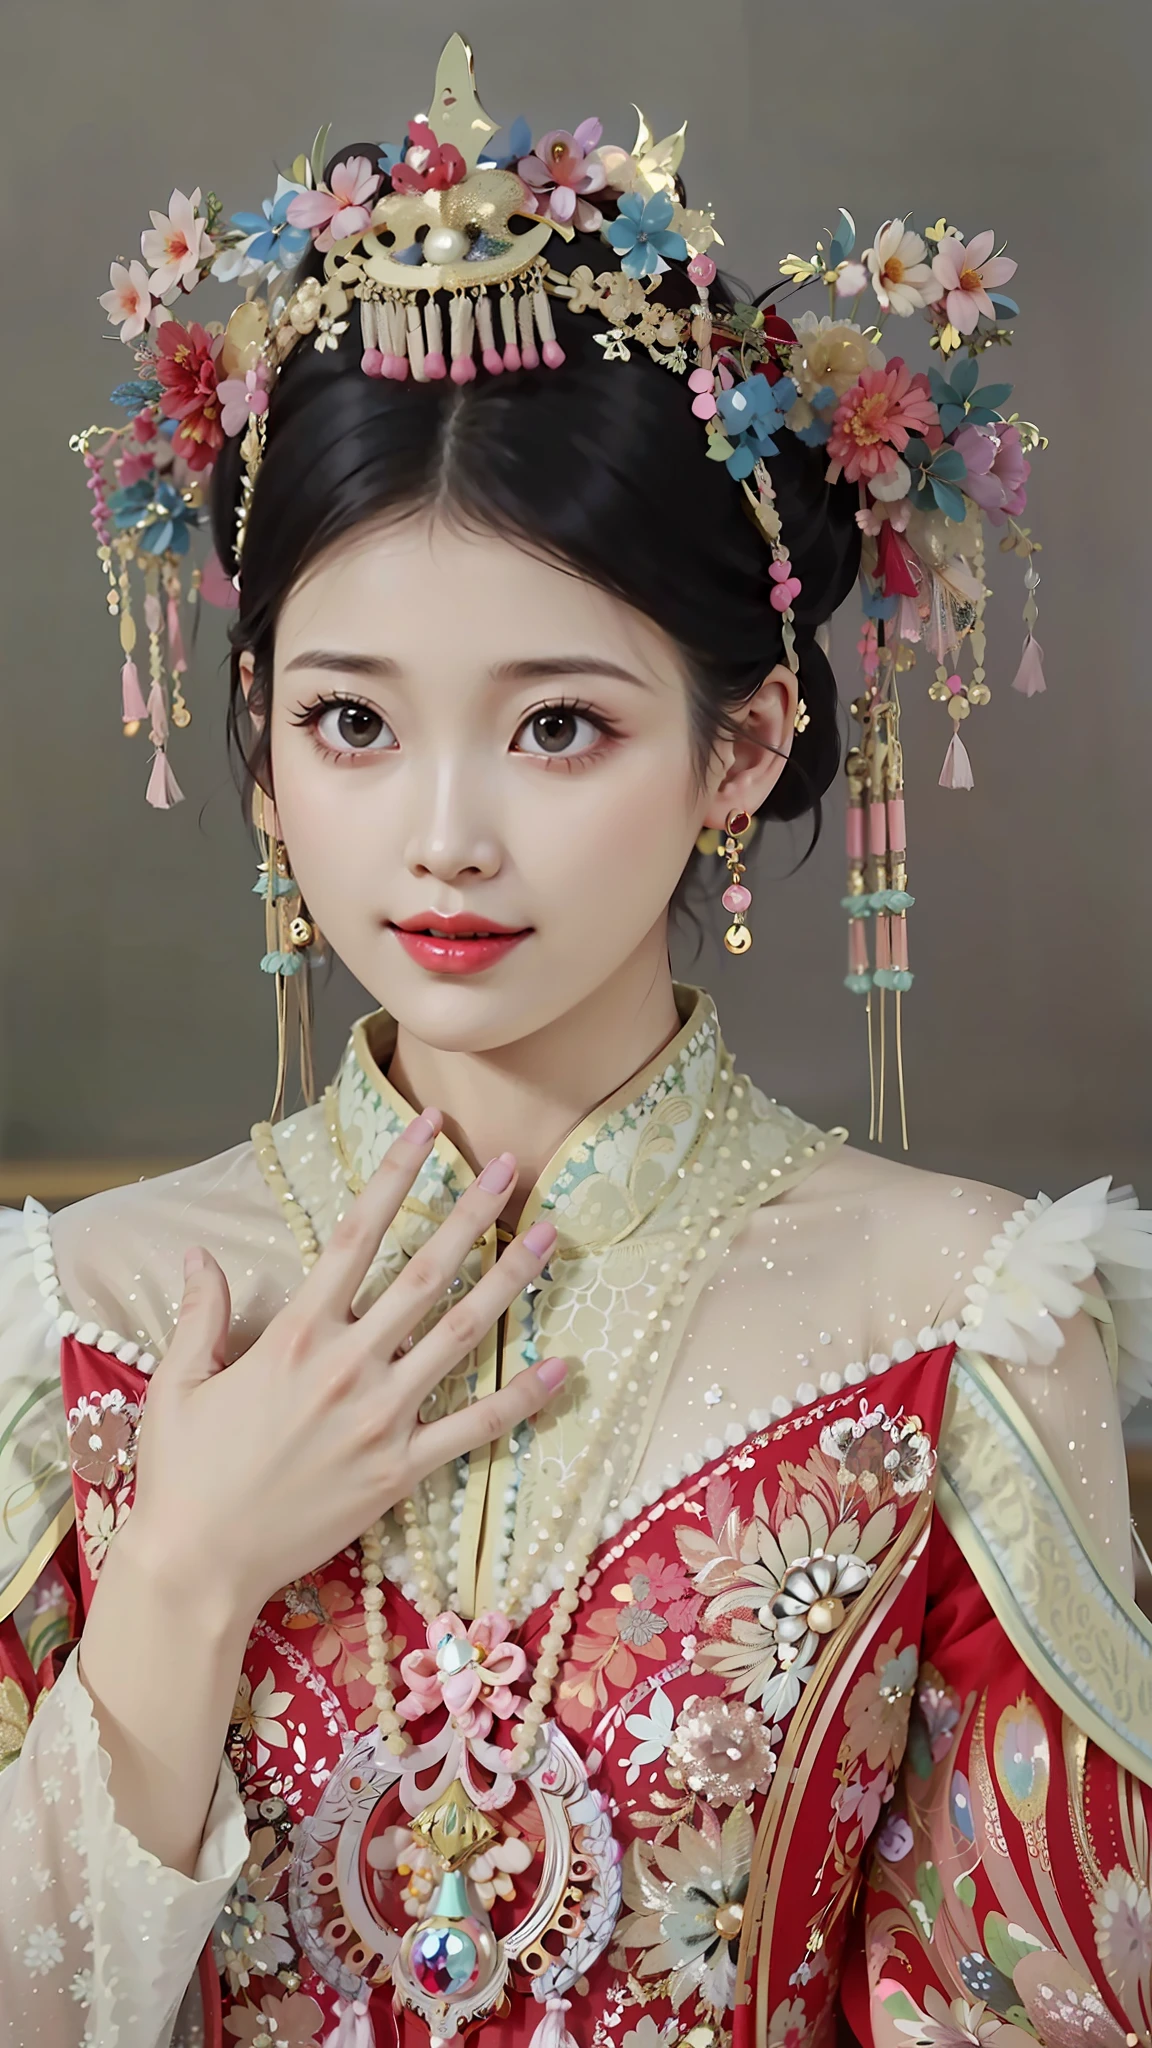 一個穿著紅色連身裙的女人和 TIA 的特寫, 宮 ， 一個穿著漢服的女孩, 中國公主, 中國古代公主, 中式, 中国服饰, 穿着中国古代的衣服, 中国皇后, 中国传统的, Hanfu, 传统美, 旗袍, 灵感来自兰英, 美麗的幻想皇后, 旗袍, shaxi